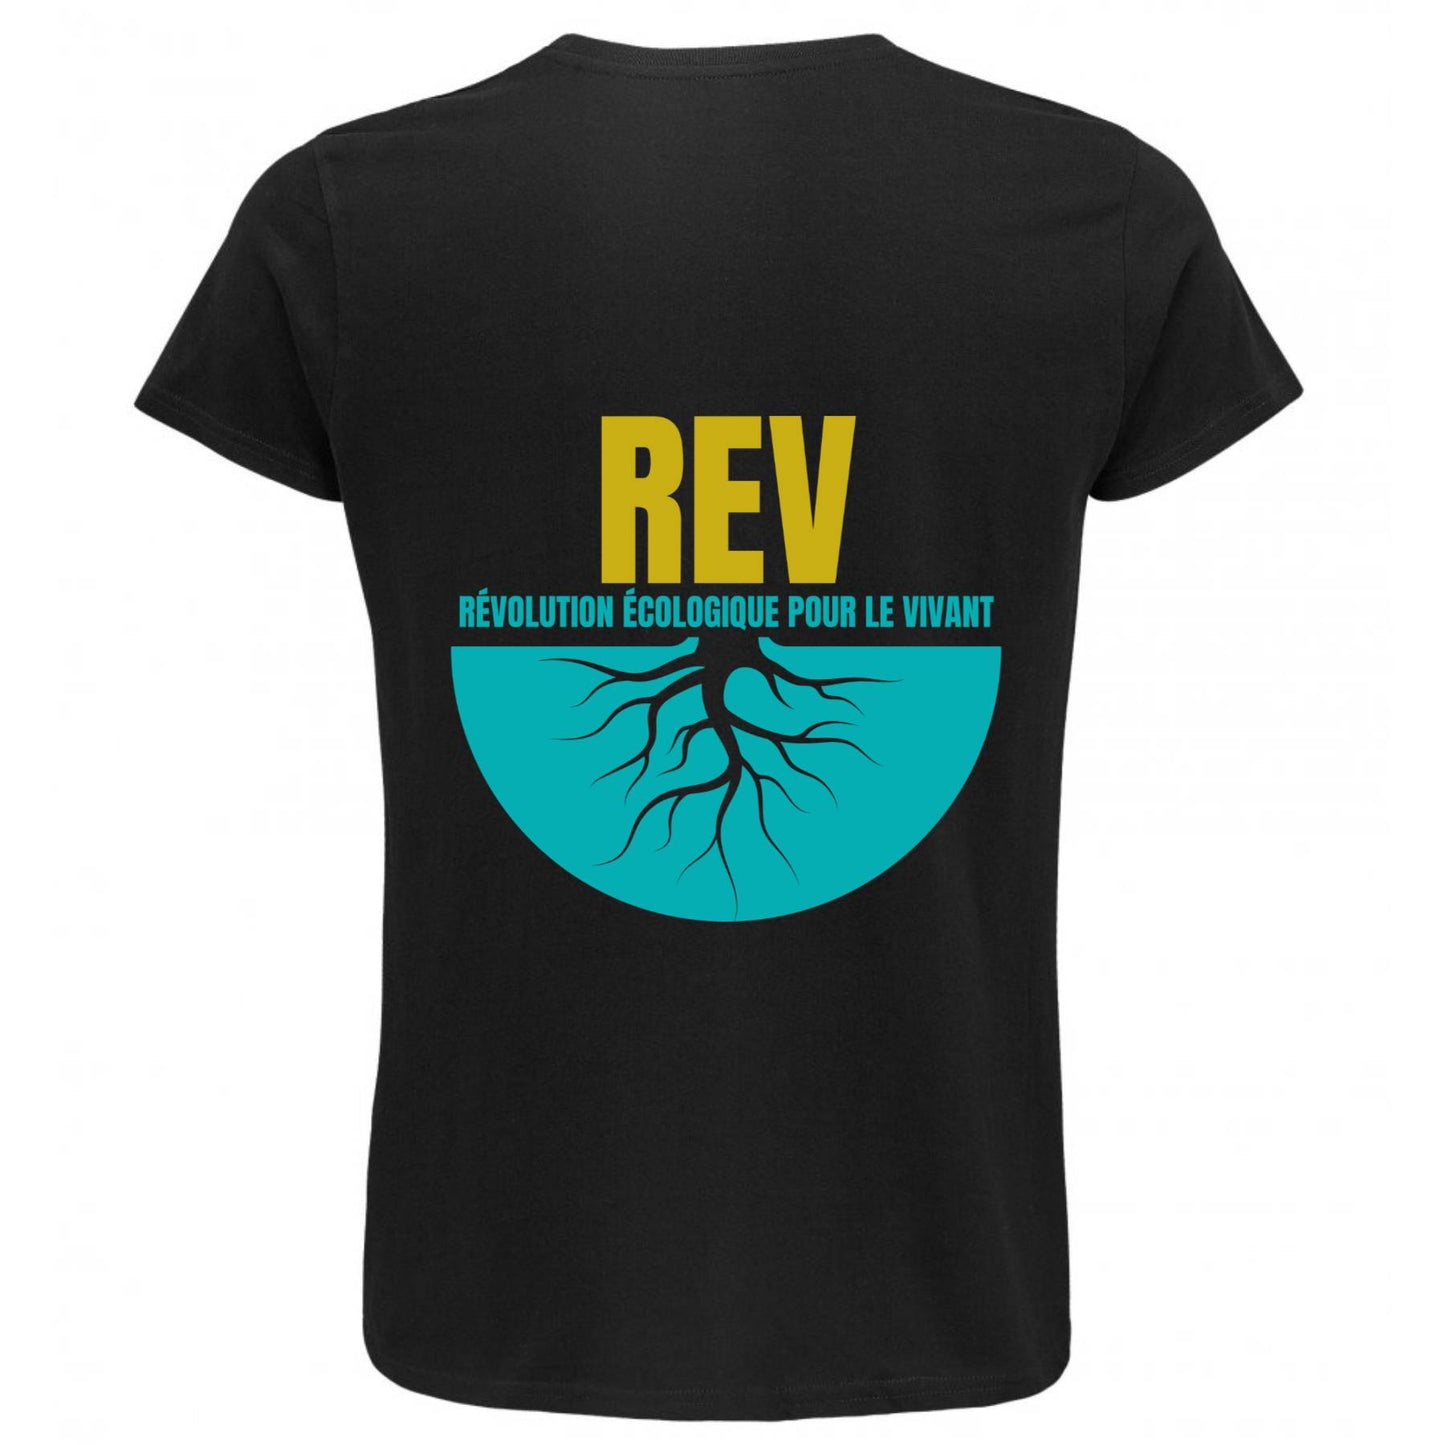 T-shirt noir avec logo REV, dos